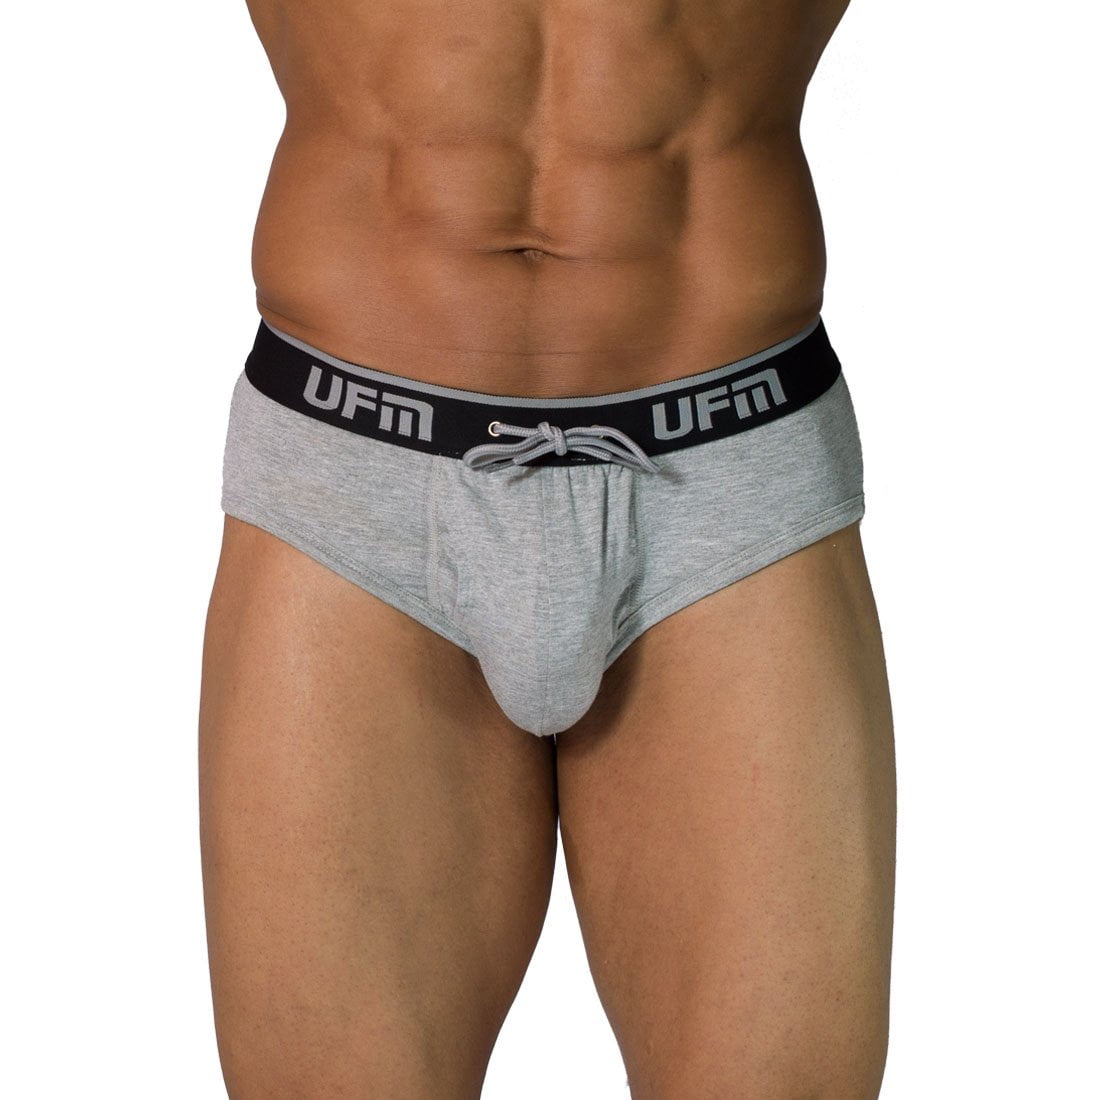 UFM Mens Underwear, Polyester-Spandex Mens Briefs, Regular and Adjustable  Support Pouch Men Underwear, 28-30 waist, Gray 